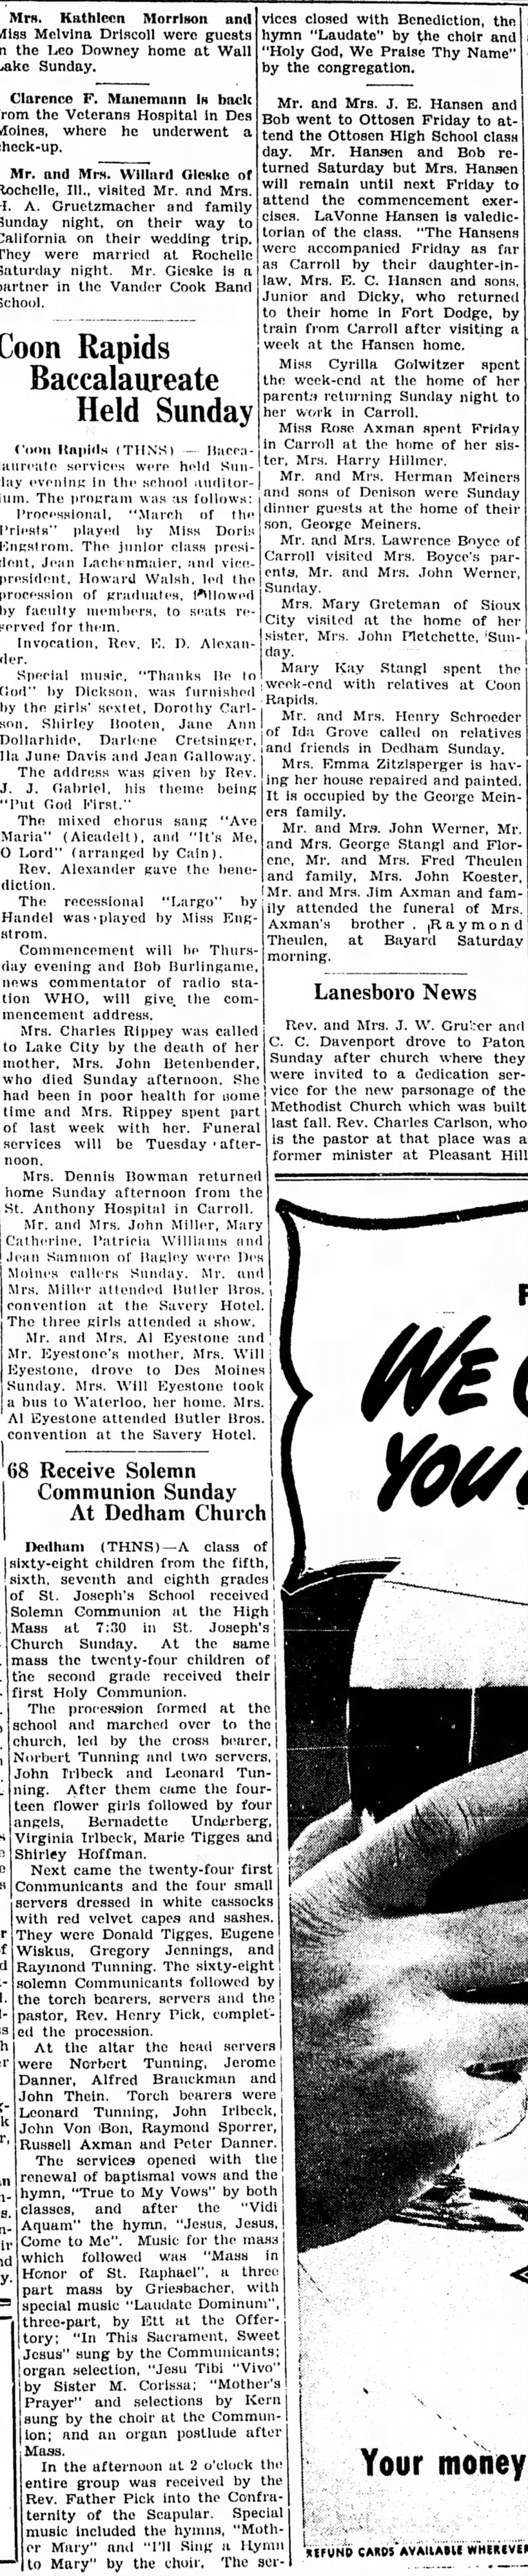 John "Jack" Von Bon, 19 May 1942, 68 Receive Soleman Communion Sunday at Dedham Church